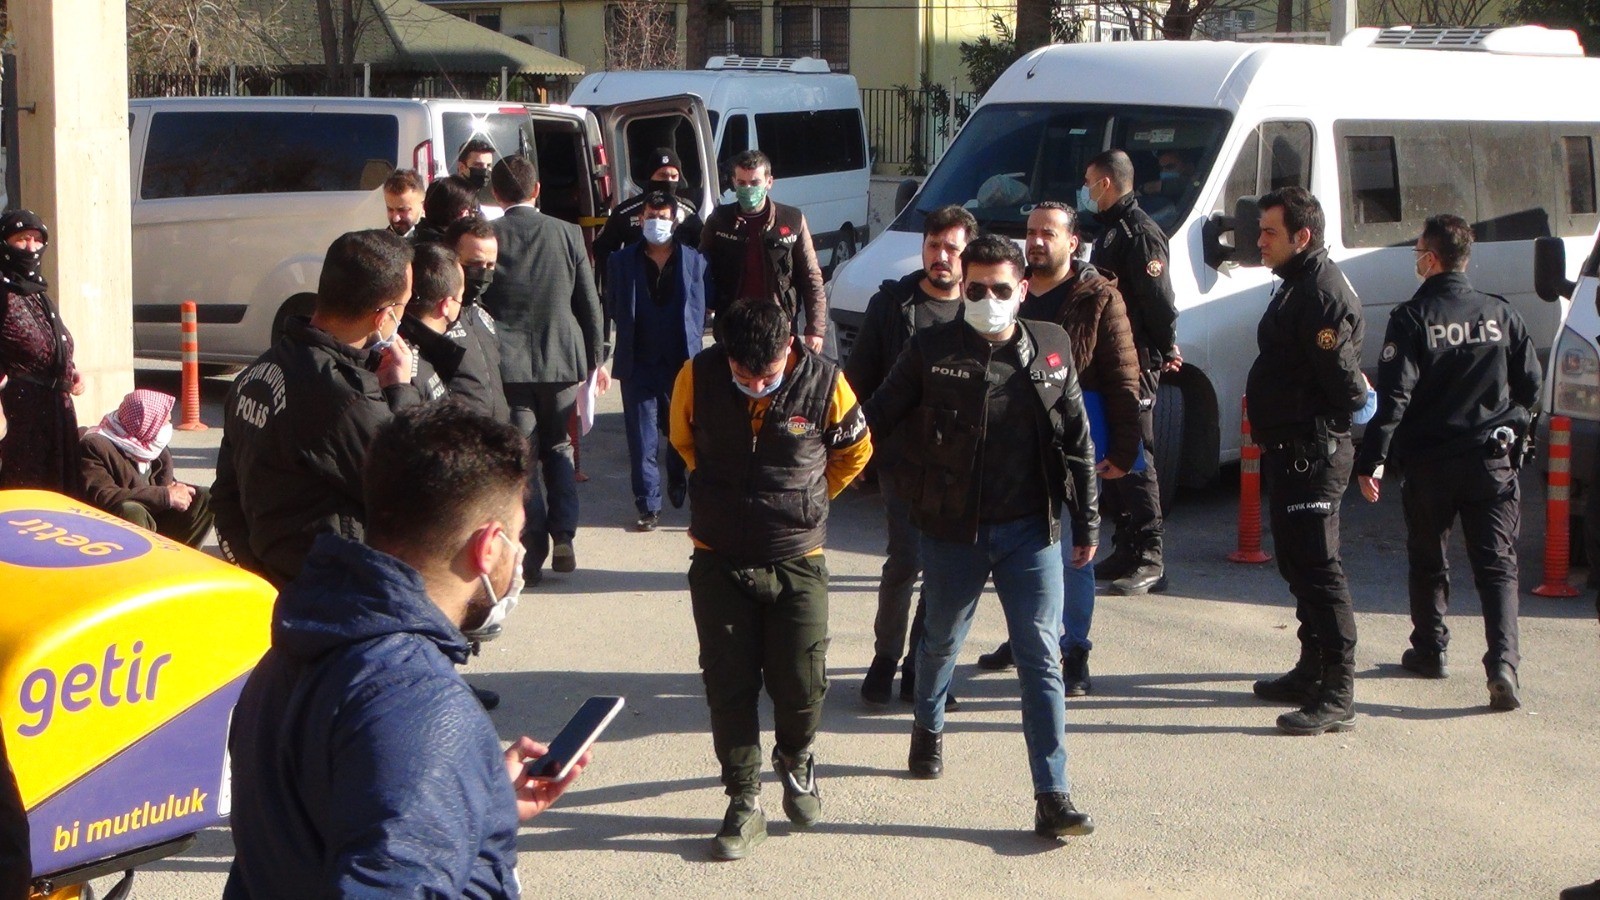 Urfa'da sokak ortasındaki cinayete ilişkin 5 zanlı adliyeye çıkartıldı;